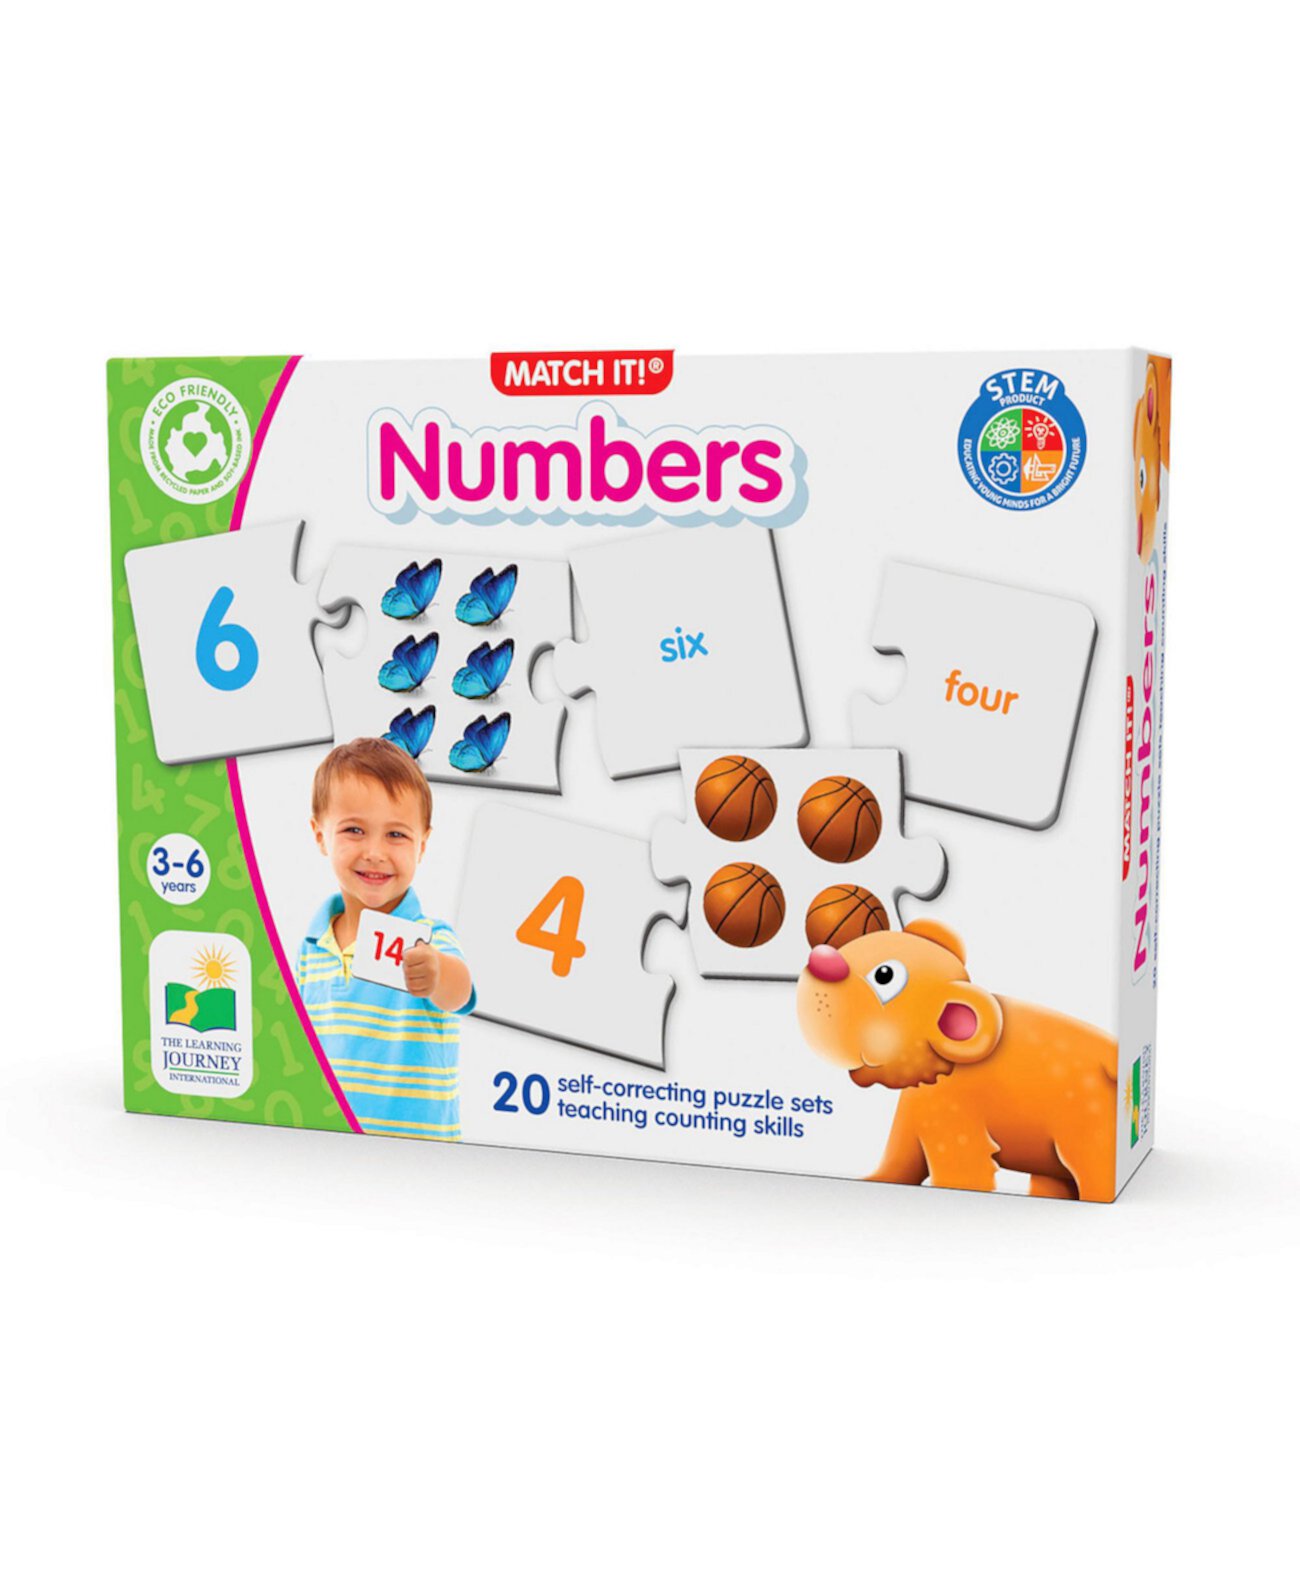 Match It Numbers - набор из 20 самокорректирующихся головоломок для подсчета чисел The Learning Journey